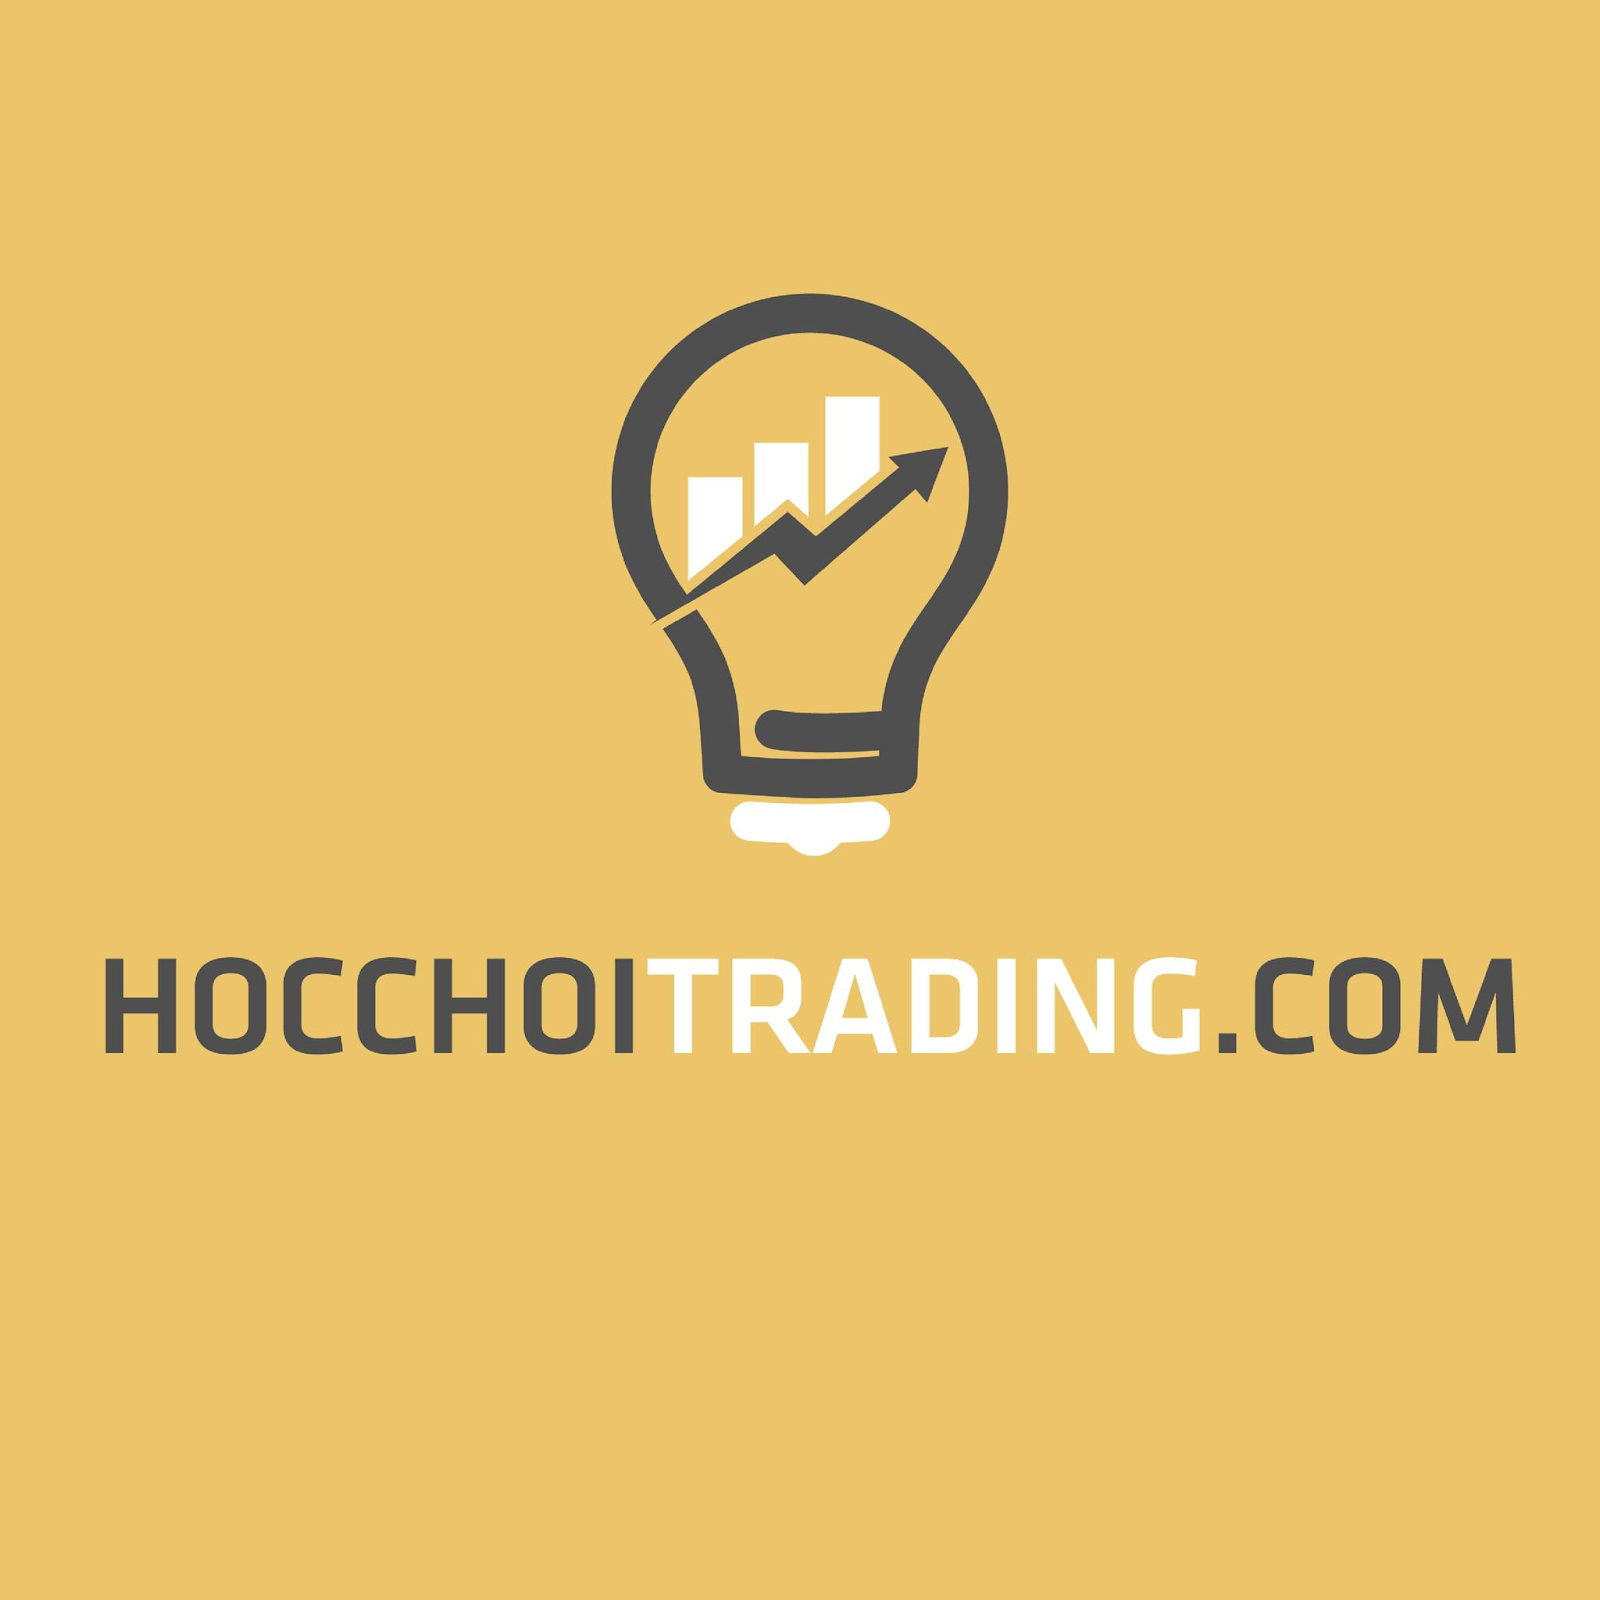 Hocchoitrading – Nơi cung cấp thông tin chuyên nghiệp